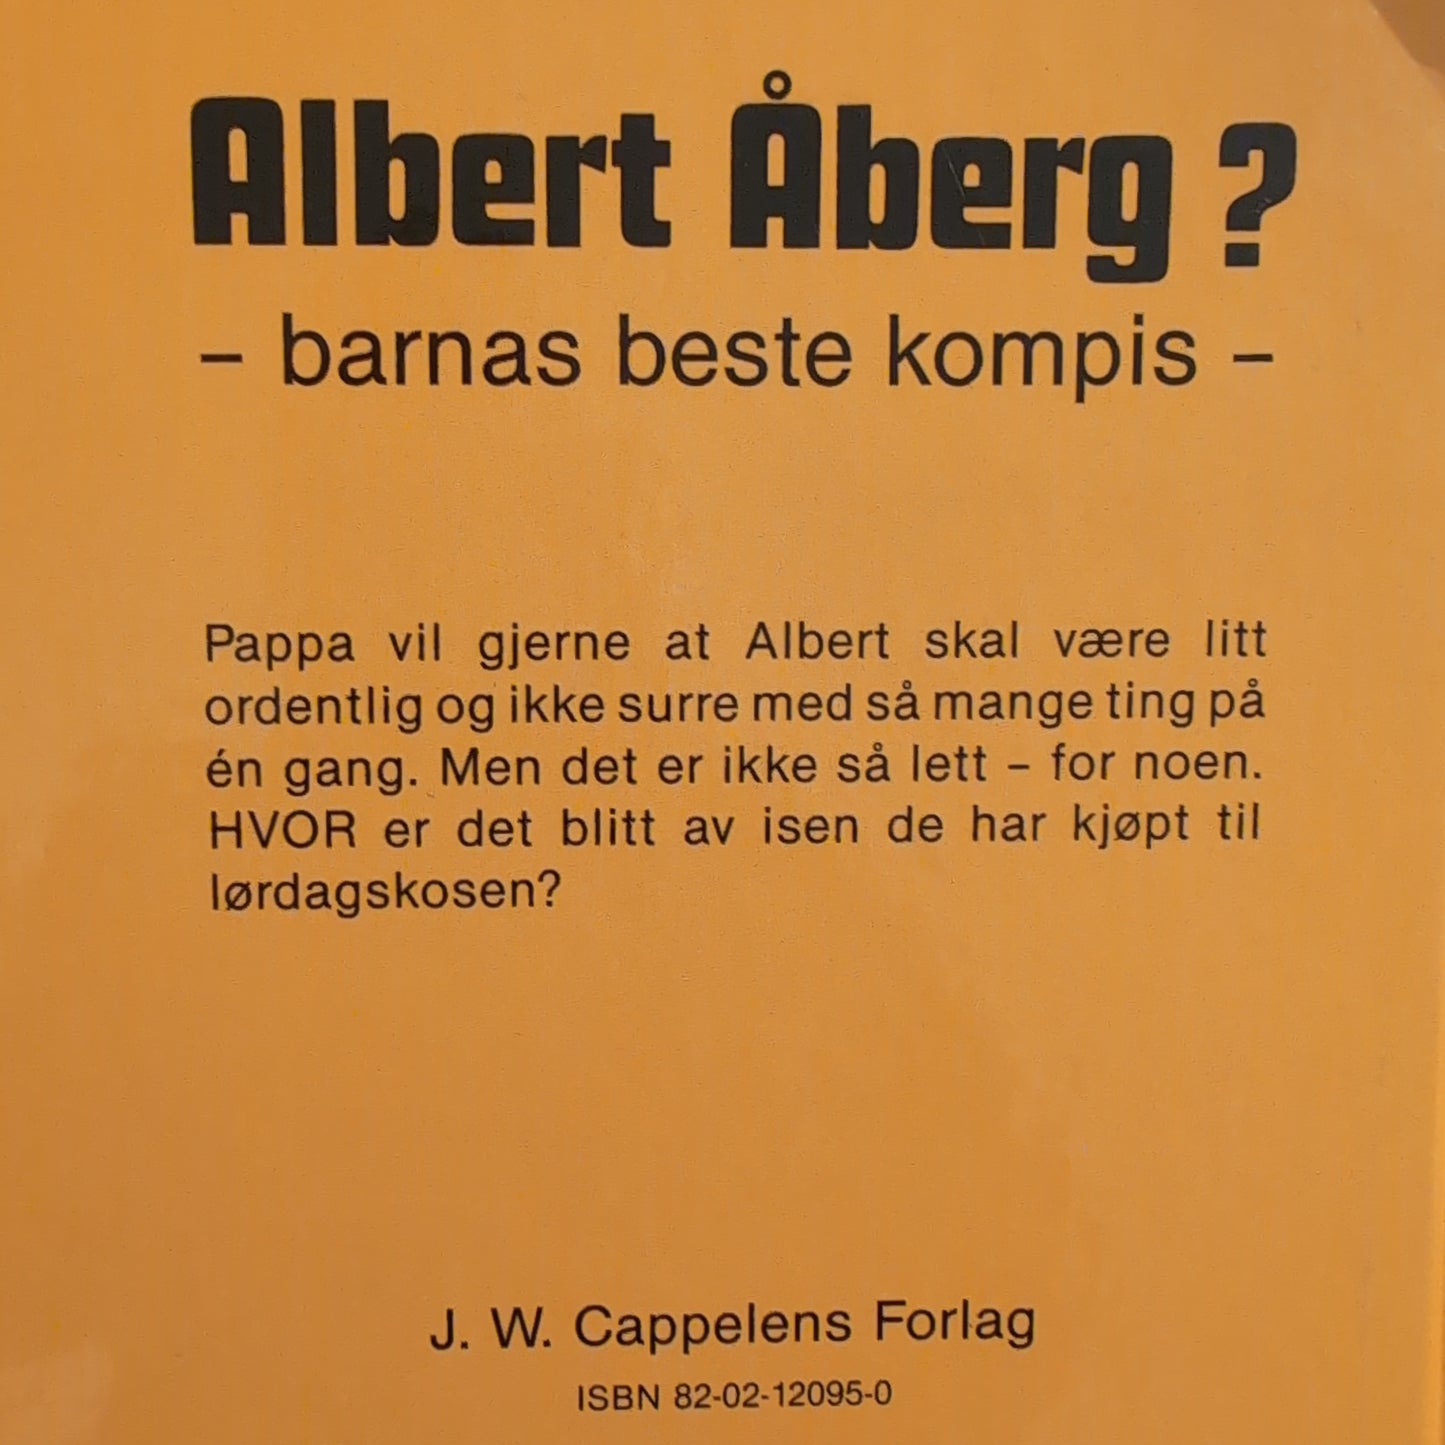 Bergström, Gunilla: Hva sa pappa, Albert Åberg?